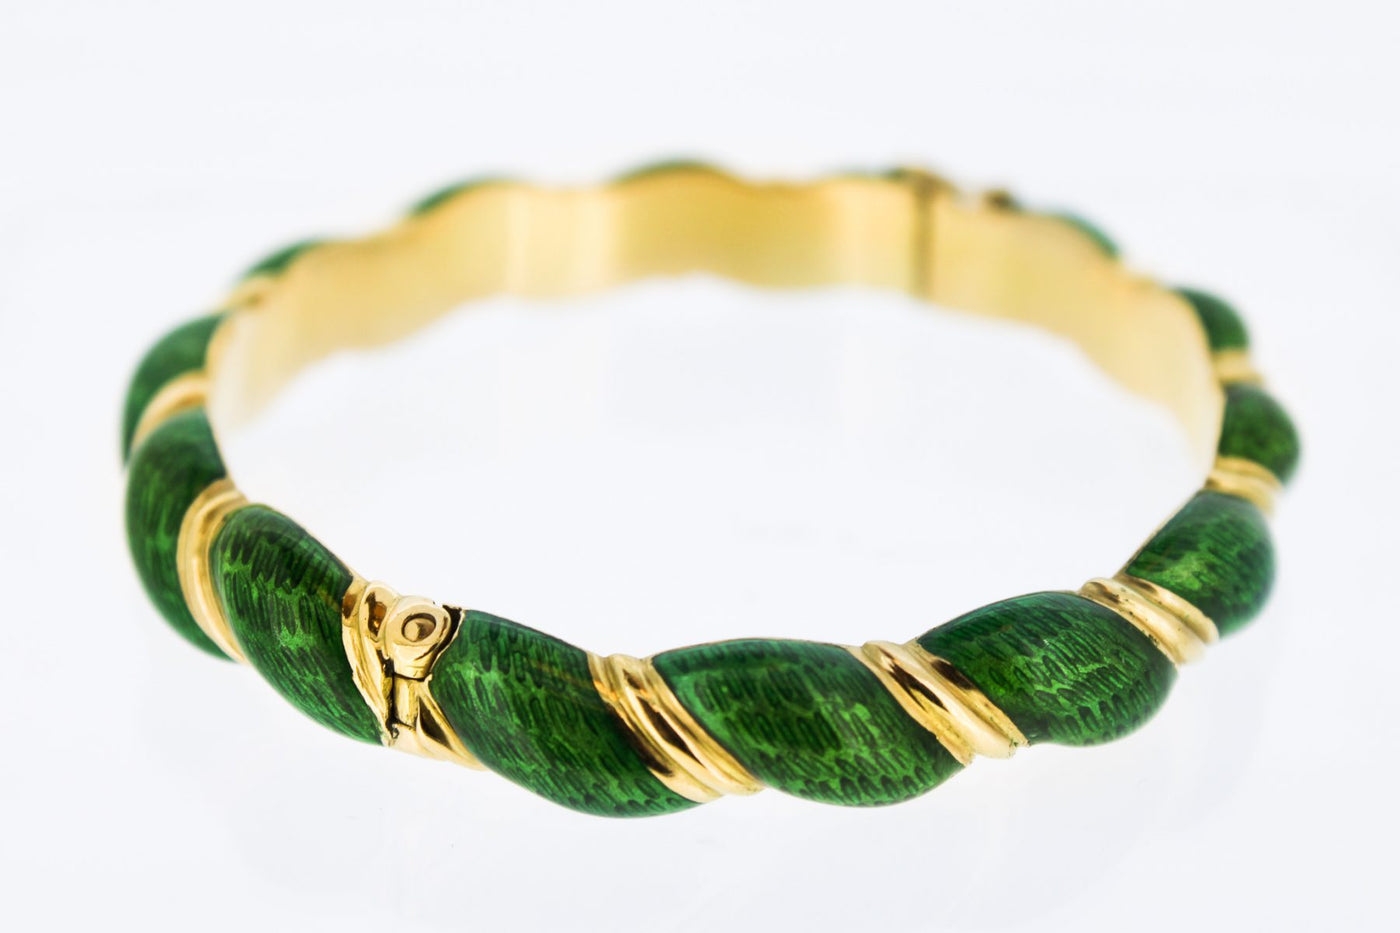 18kt Yellow gold Twisted Green Enamel Bracelet